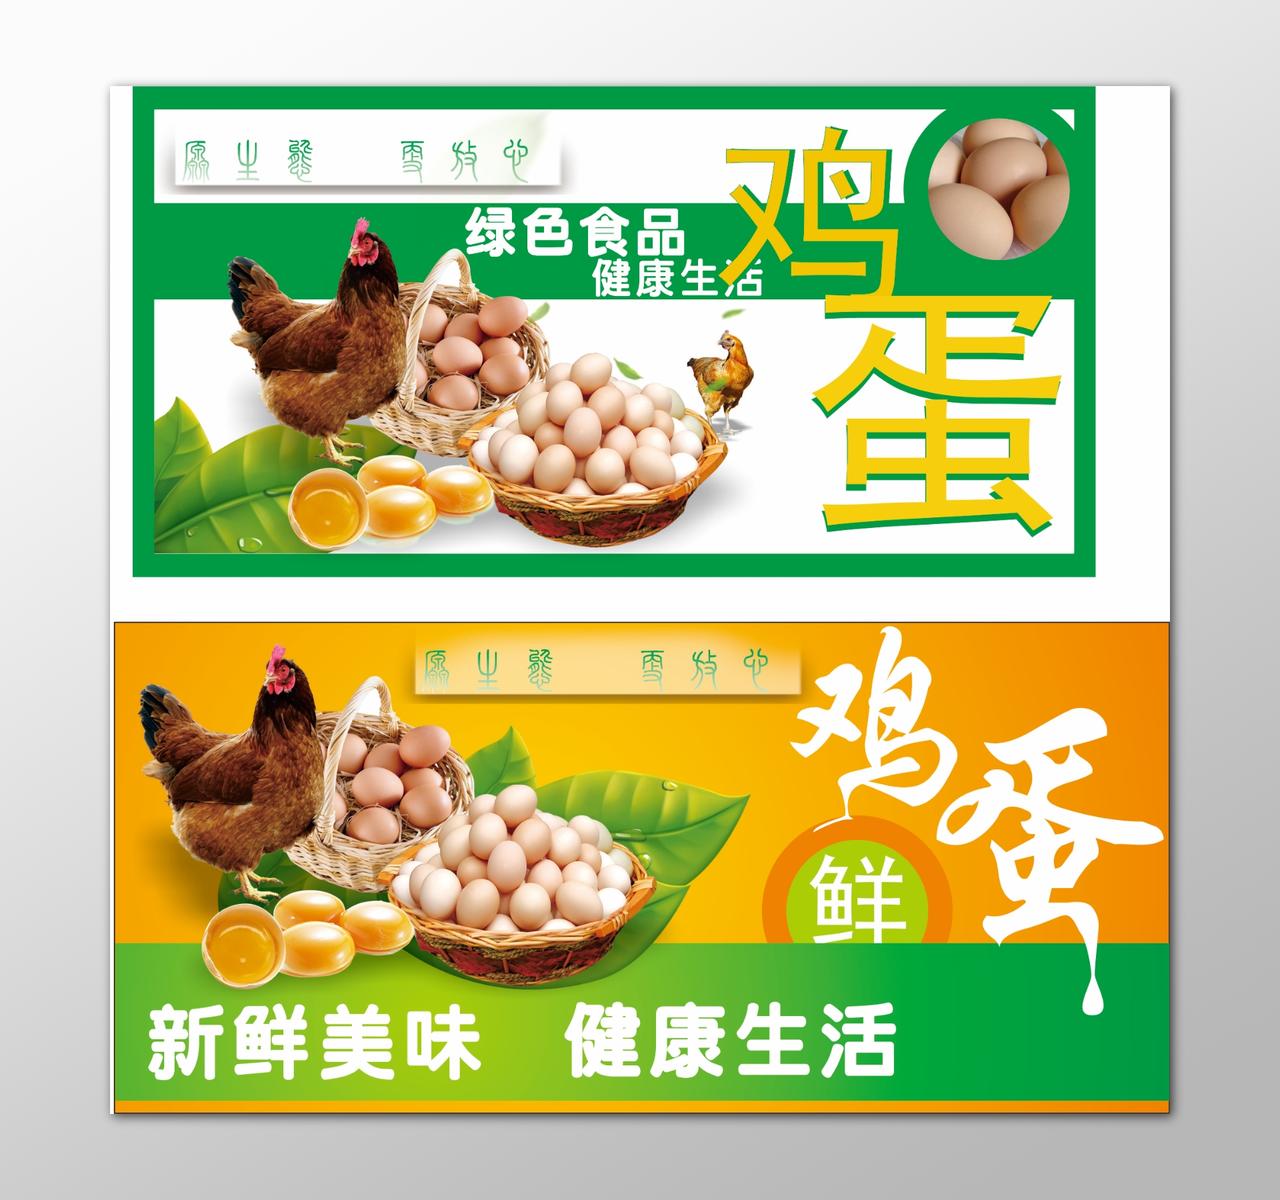 鸡蛋生鲜土特产绿色食品健康生活新鲜美味海报模板